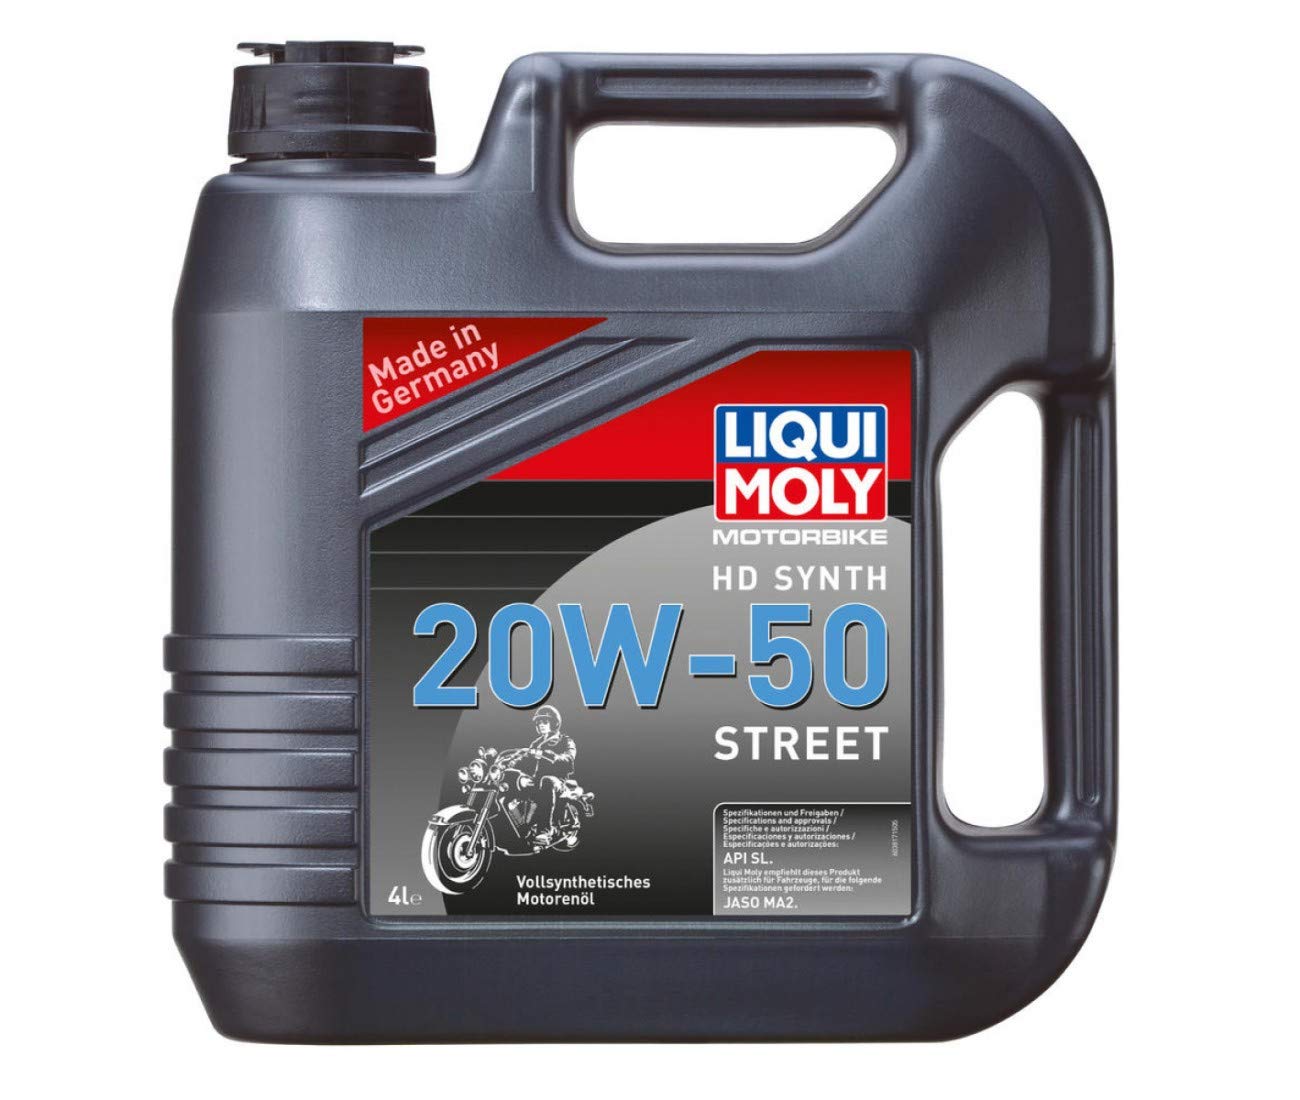 Liqui Moly Motorbike HD Synth 20W-50 Street Motoröl 4 Liter Kanister von Motorex